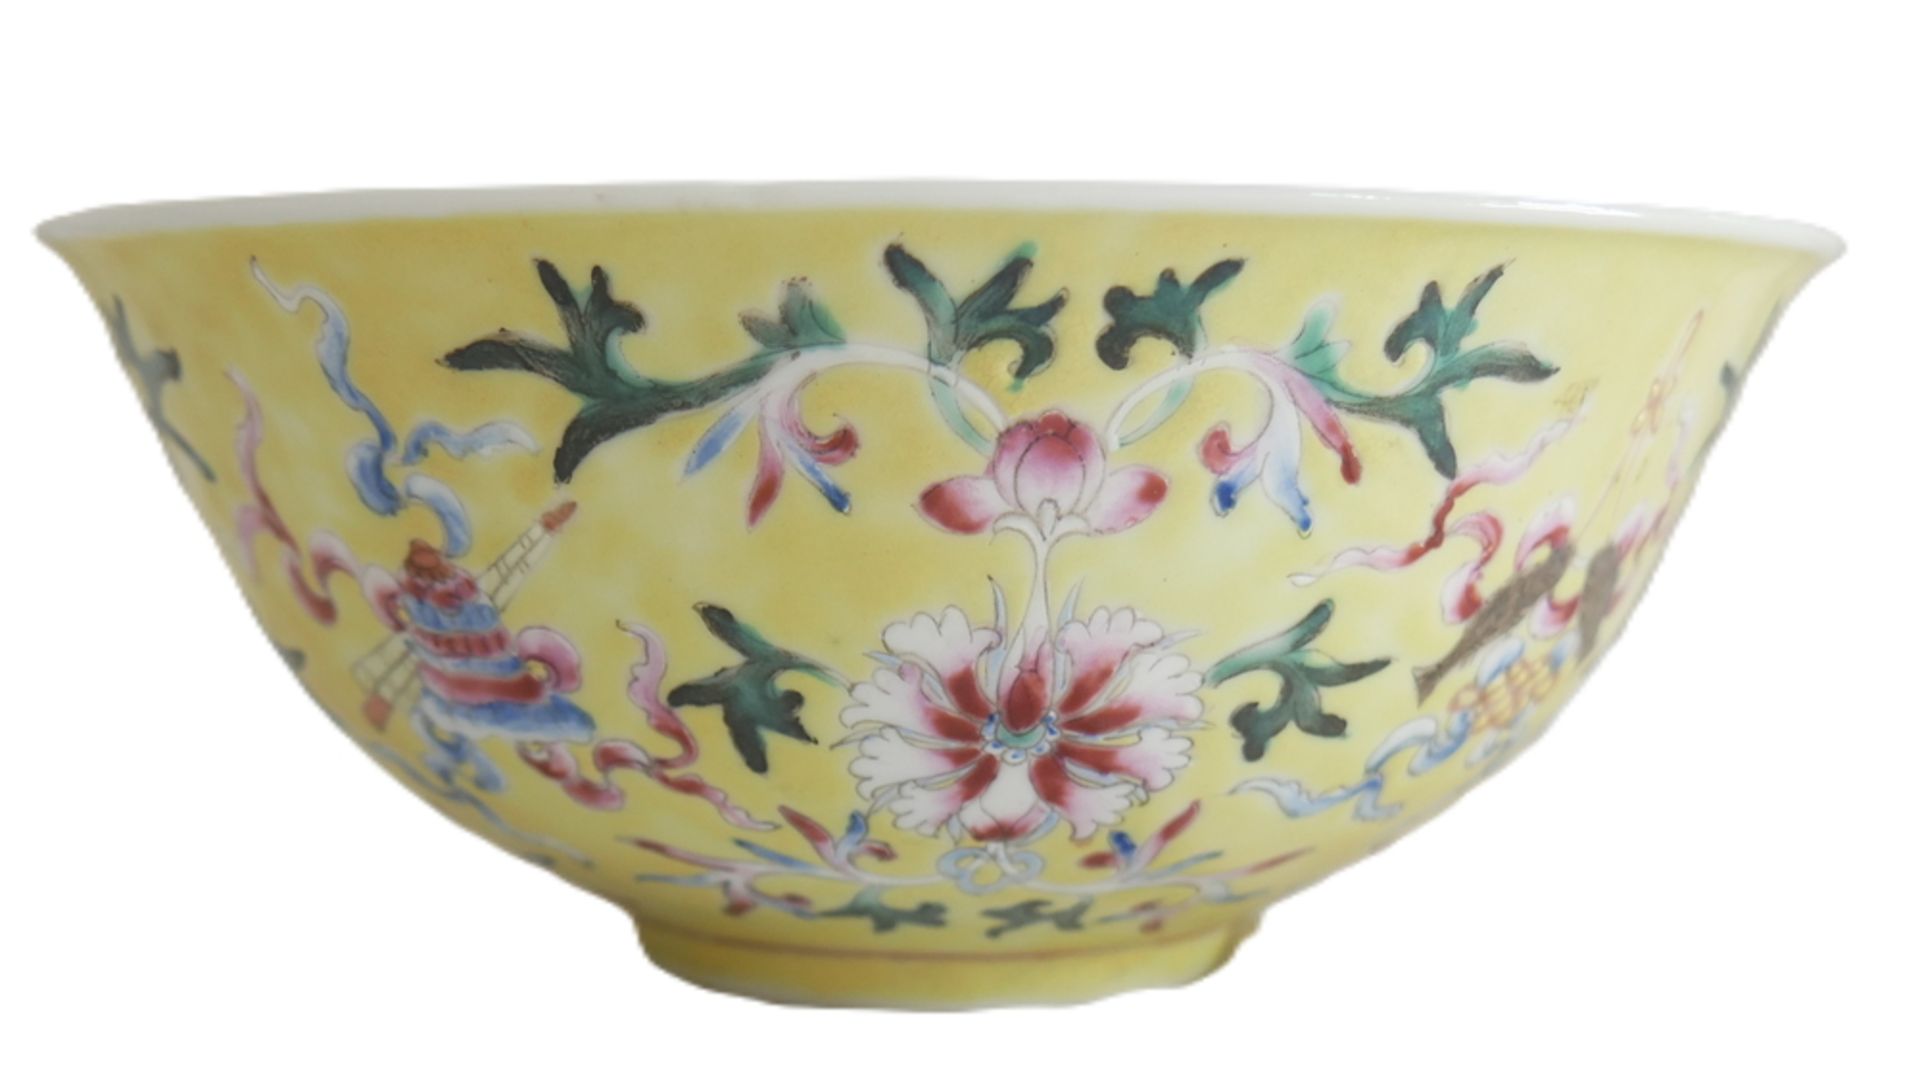 Aus Sammelauflösung! Altes chinesisches Porzellan des 19. Jahrhunderts. 2 Schalen, um 1880 - 90. - Image 2 of 3